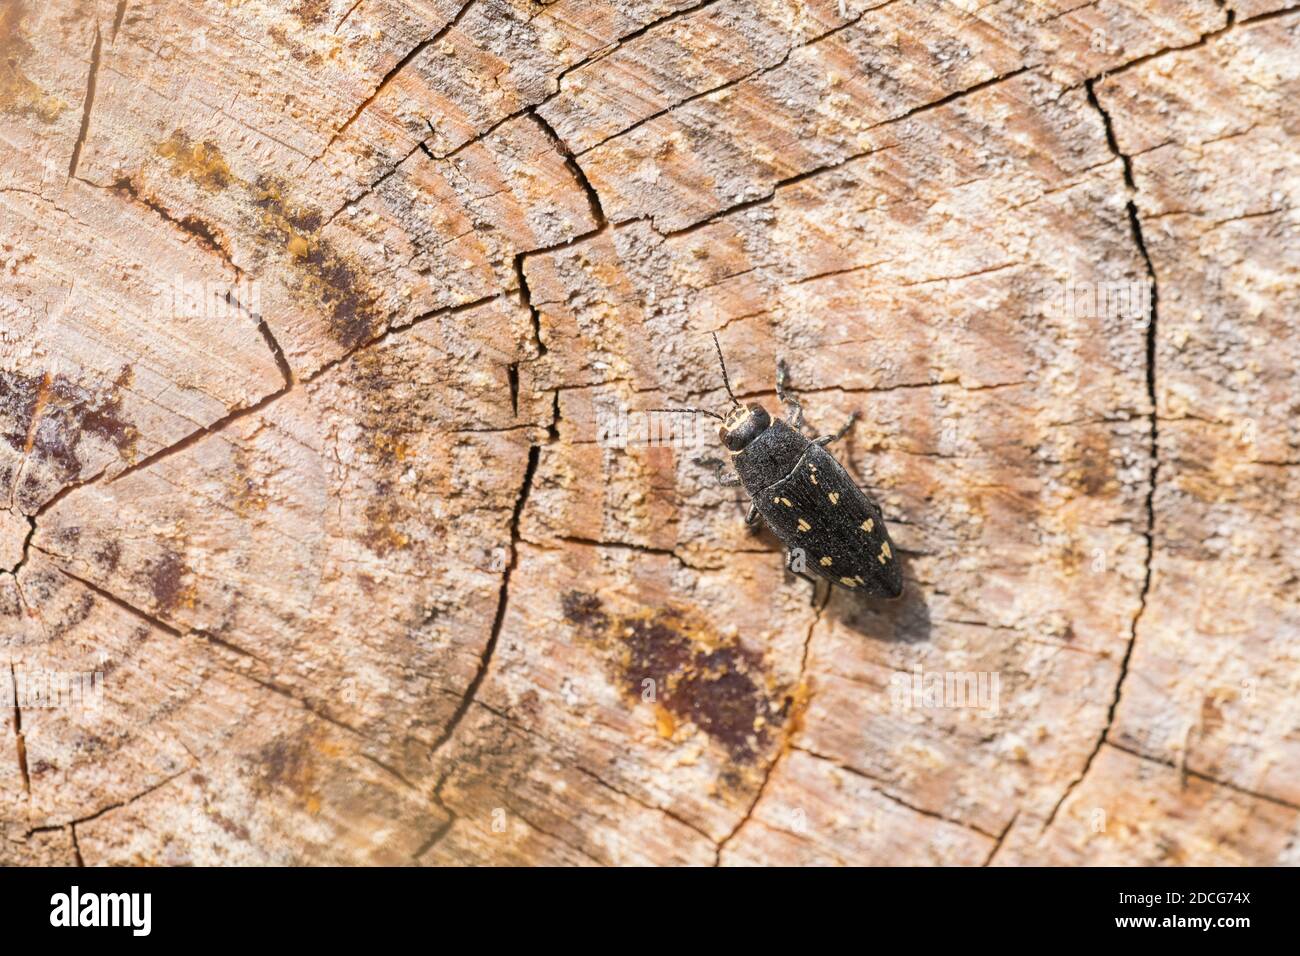 Buprestis à neuf points (Buprestis novemmaculata), coléoptère des joyaux, buprestidae, sur le tronc du pin, Pinus. Banque D'Images